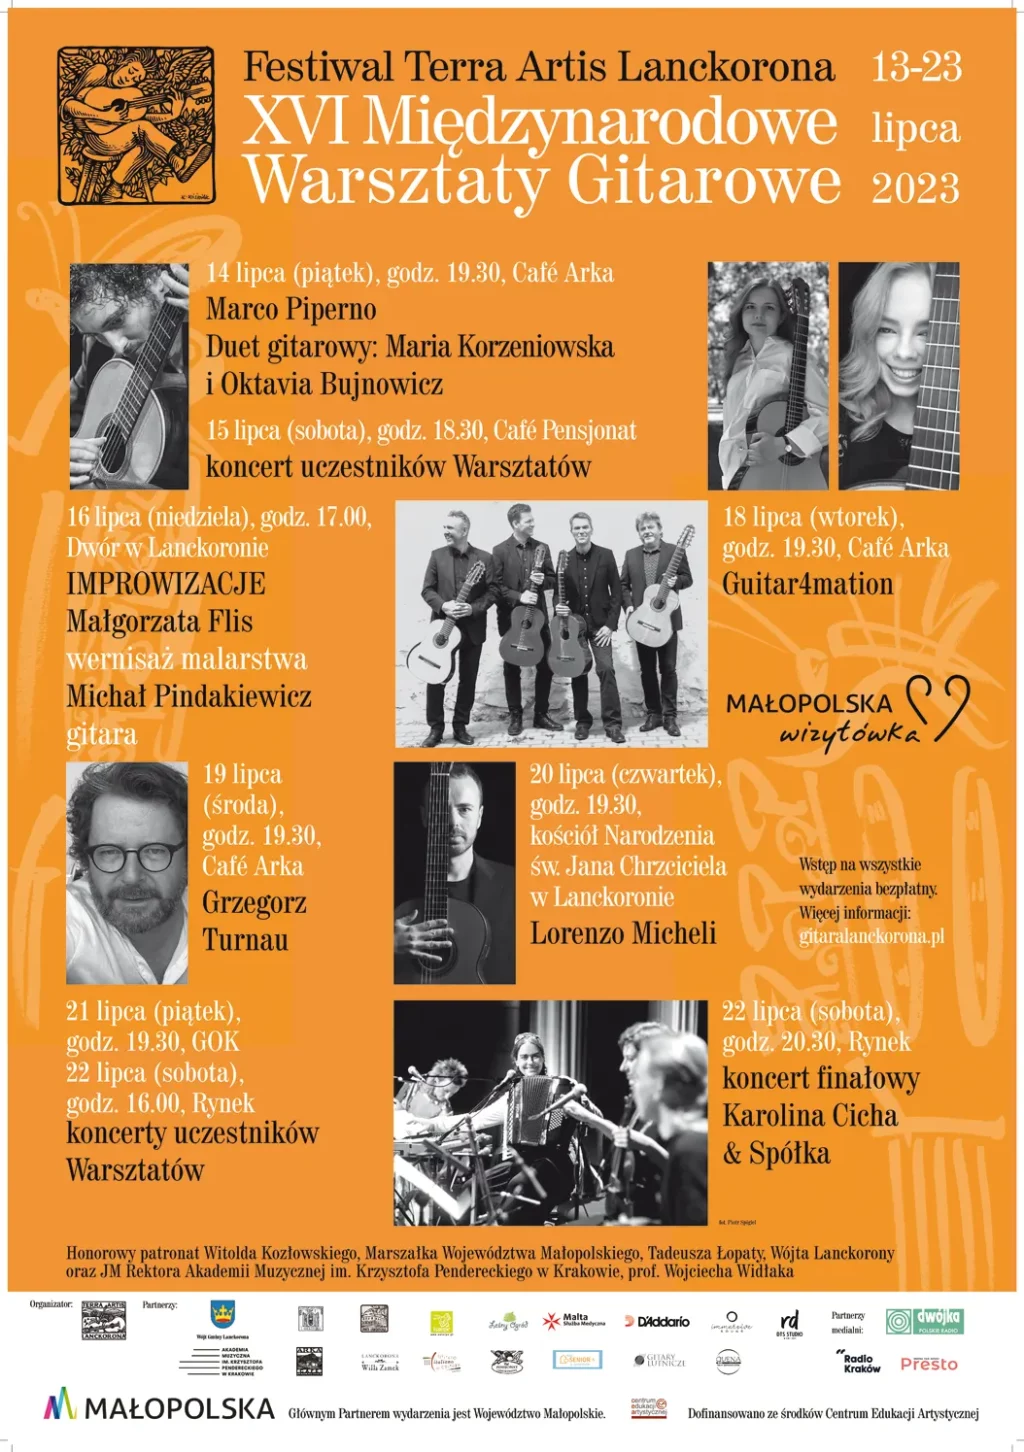 XVI Międzynarodowe Warsztaty Gitarowe w Lanckoronie/ Festiwal Terra Artis (13-23 lipca 2023)